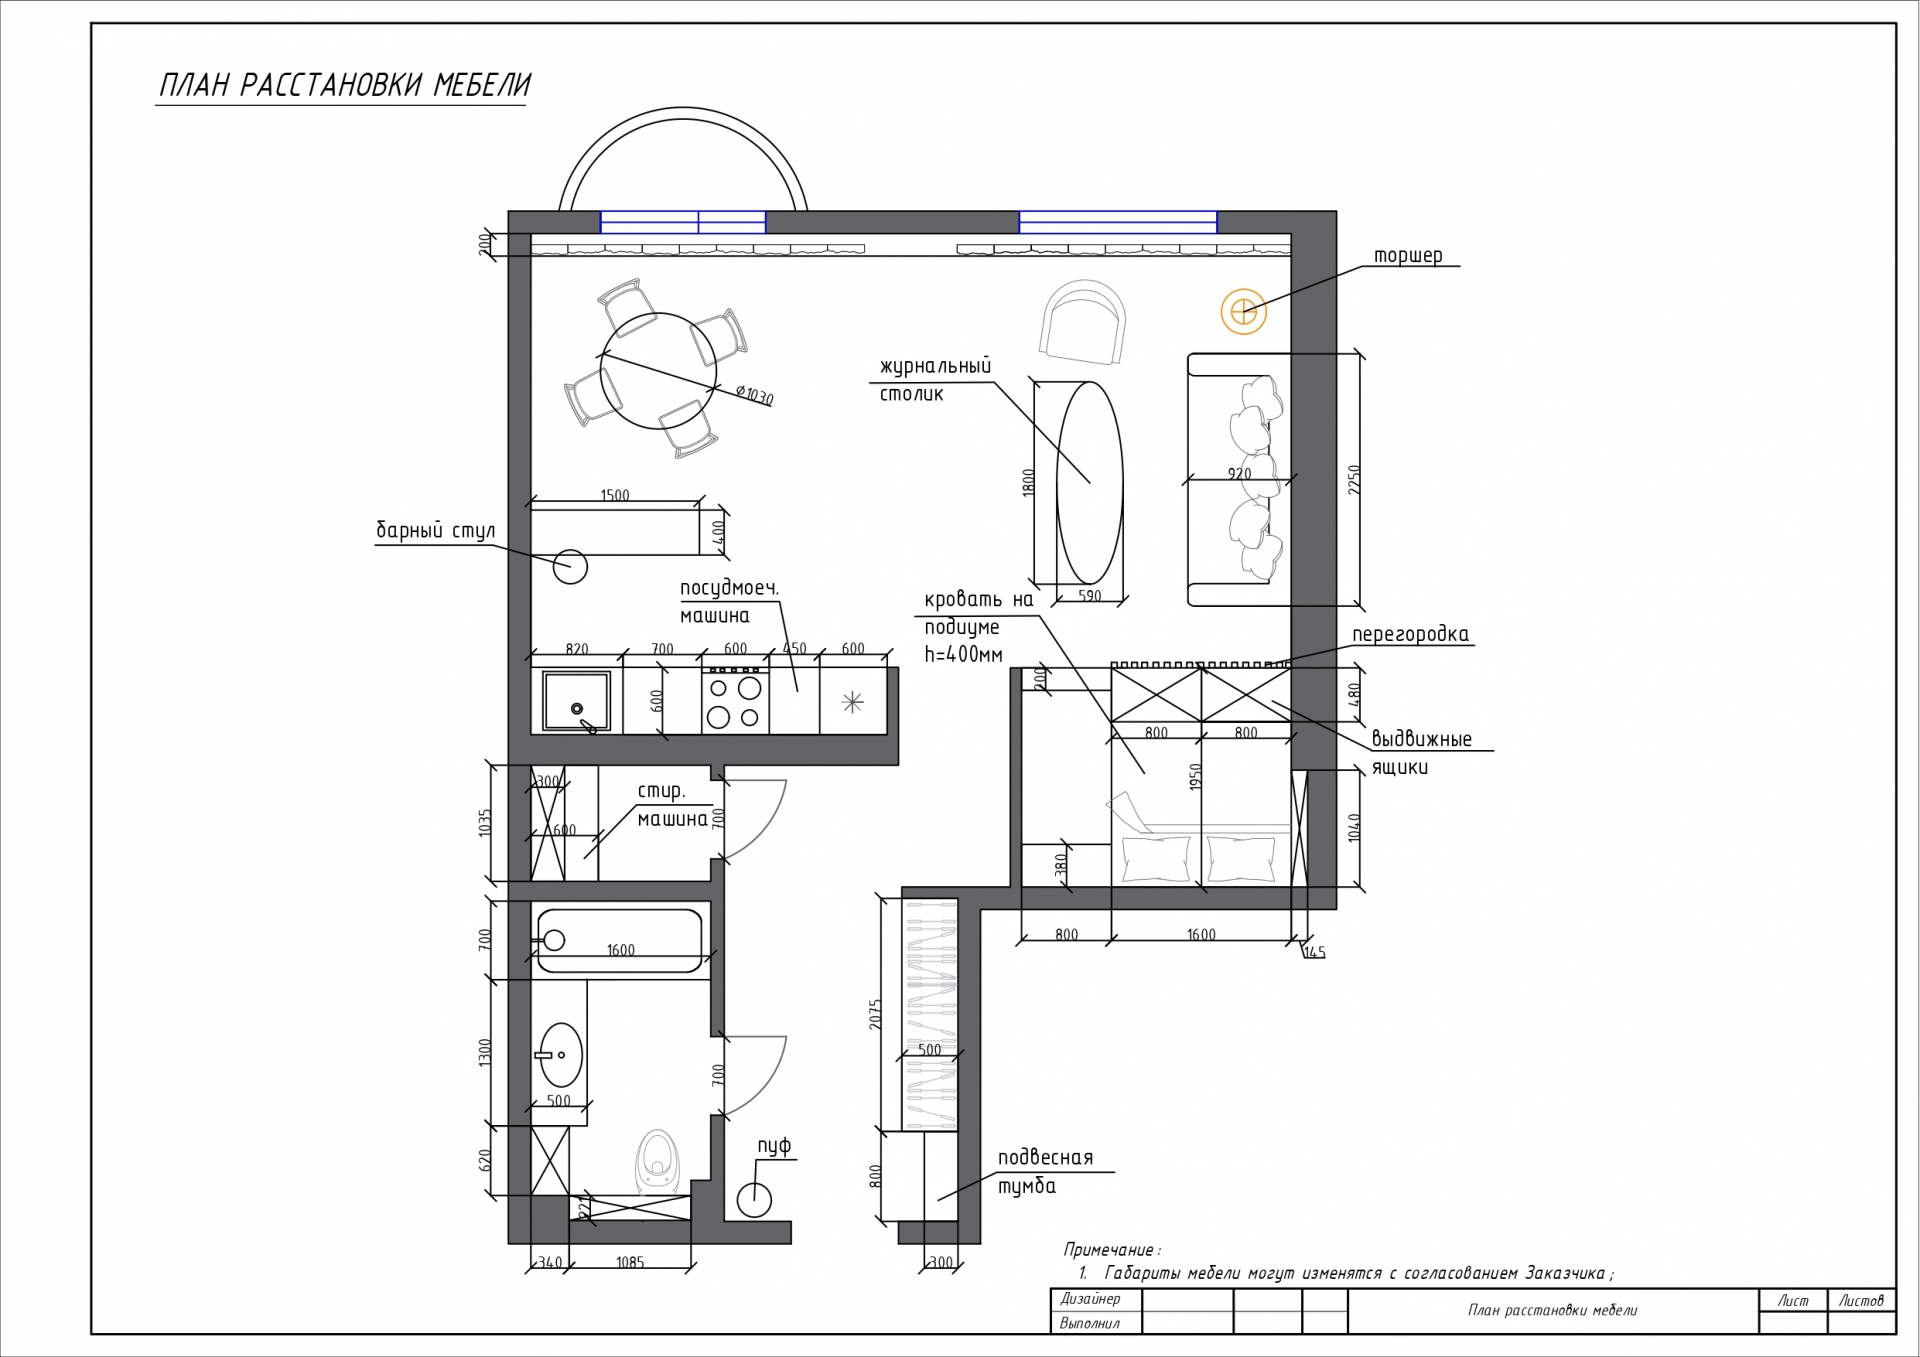 Sơ đồ thiết kế căn hộ diện tích 49,5m² do NTK nội thất cung cấp.